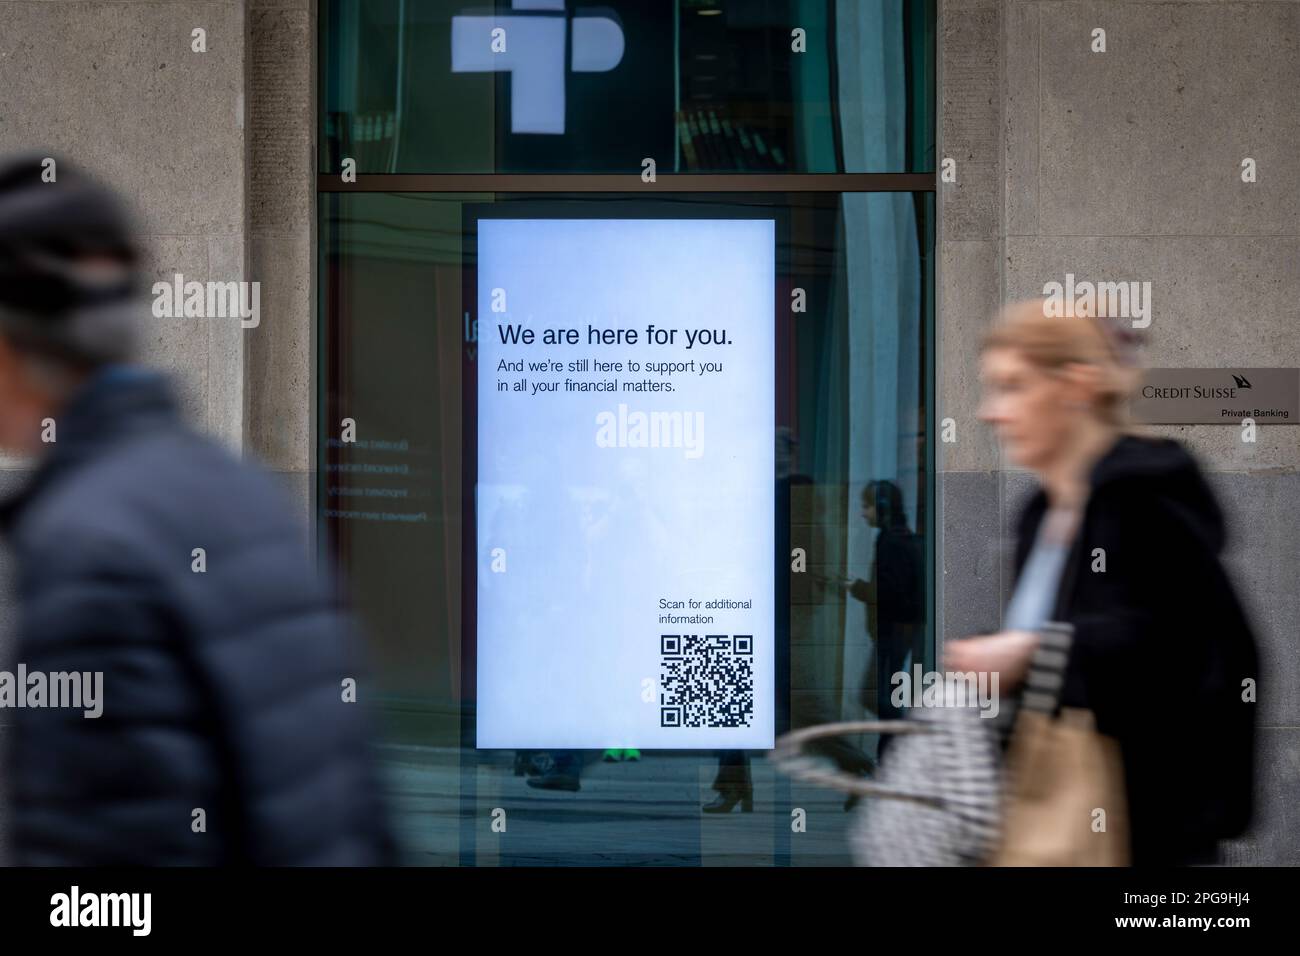 Nelle finestre della filiale principale del Credit Suisse a Ginevra viene visualizzato il messaggio " Siamo qui per voi". La banca che è stata rilevata dalla sua rivale UBS per prevenire un fallimento bancario a cascata, sta ora cercando di calmare i suoi clienti che sono preoccupati per il loro denaro. Foto Stock